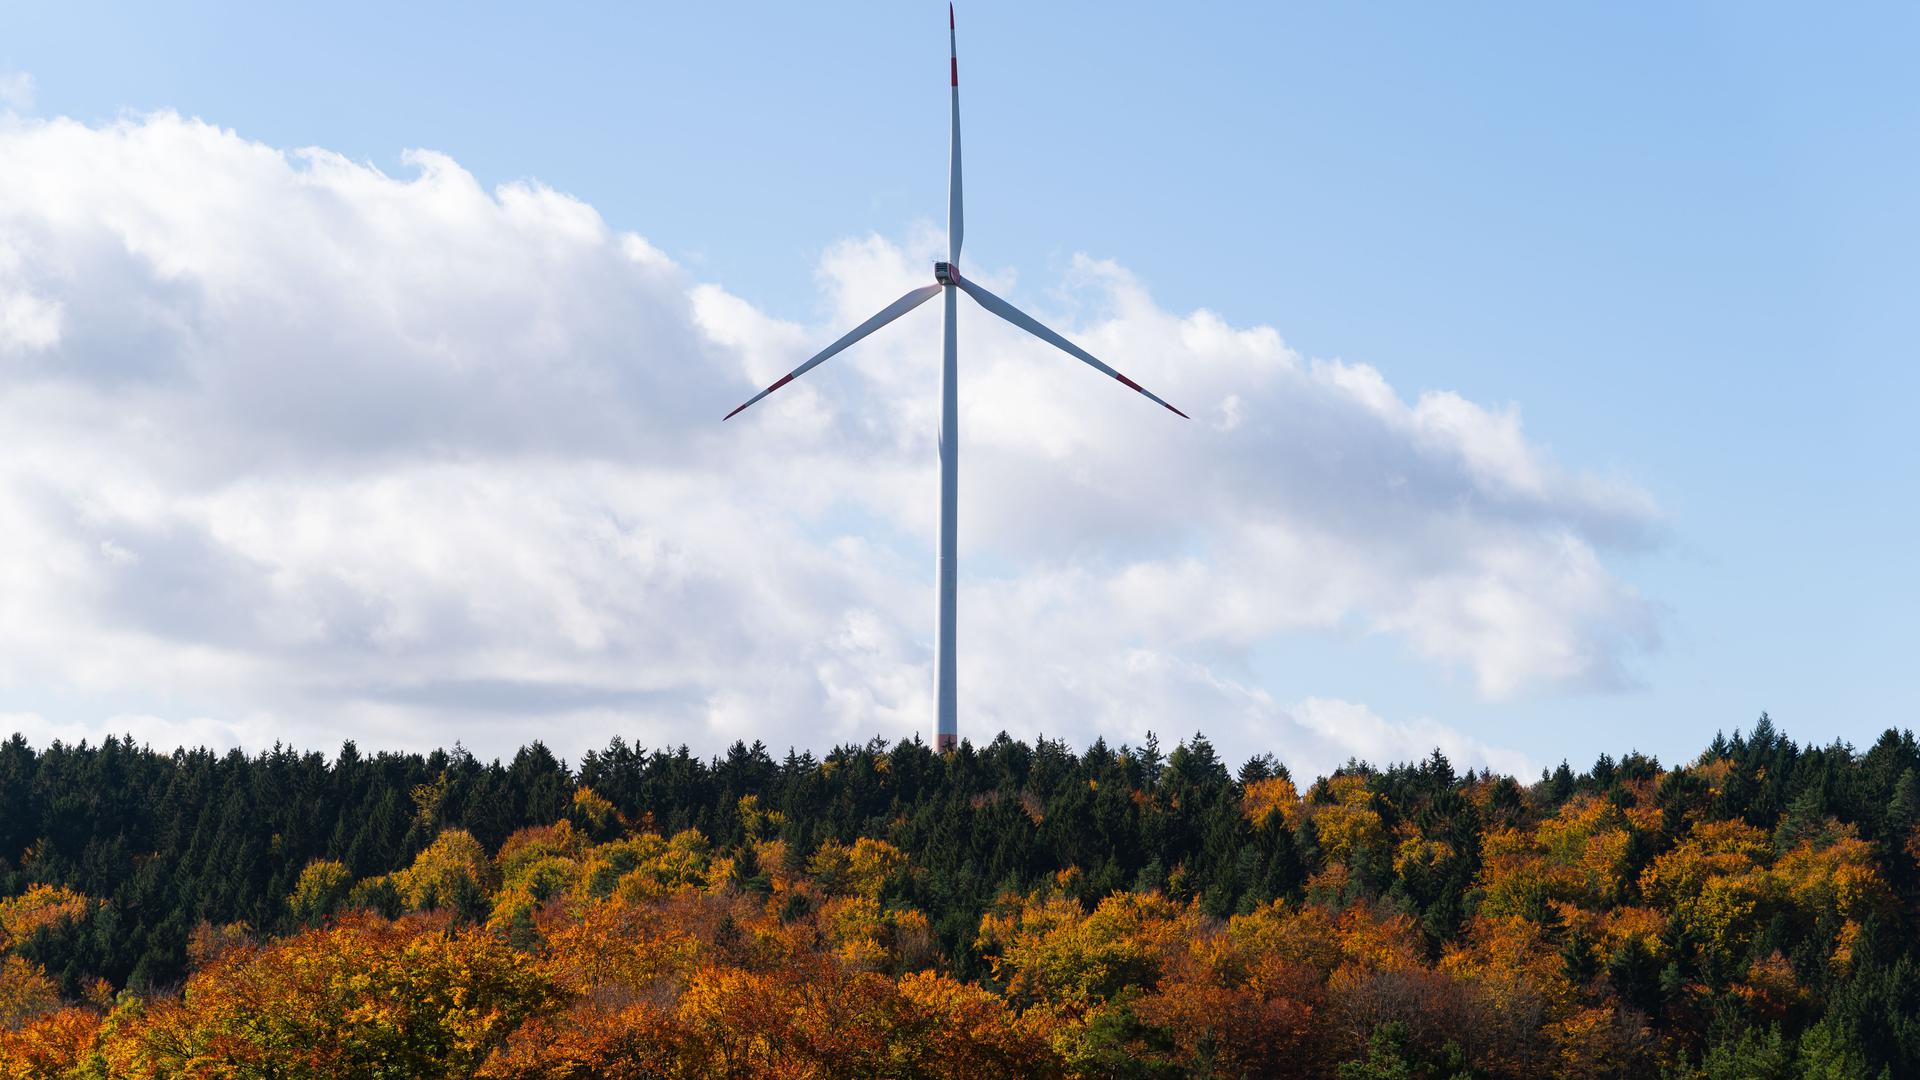 Günstiger Standort: Der Lachsberg in Forbach eignet sich aufgrund seiner guten Windbedingungen am ehesten für den Bau von Windkraftanlagen.